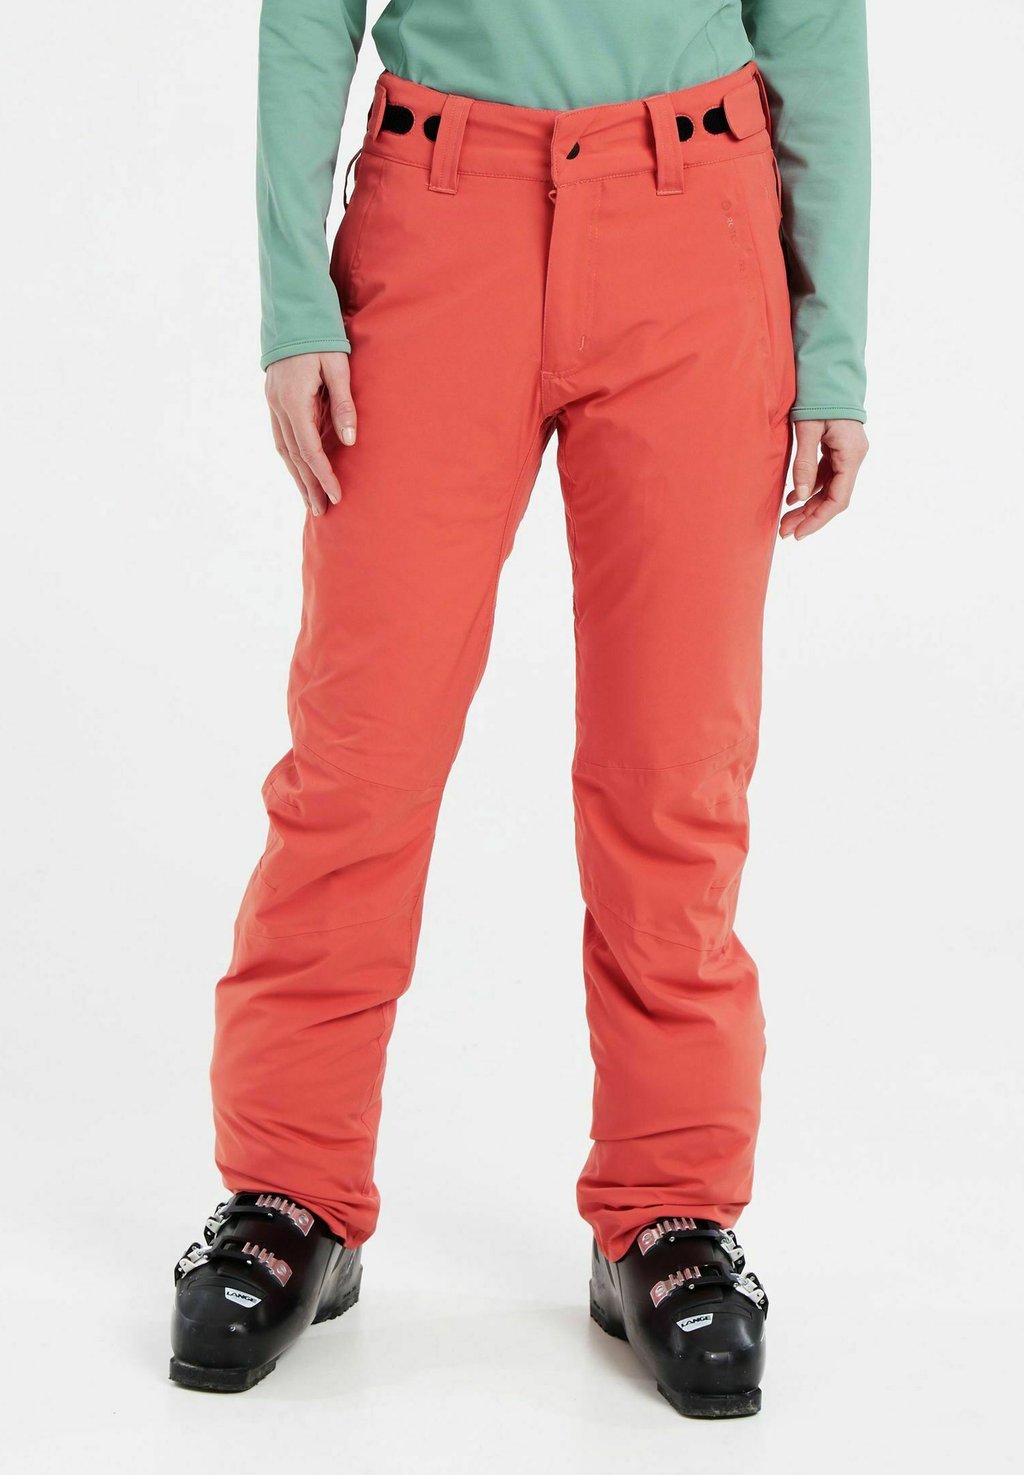 Лыжные брюки CARMACKS Protest, цвет tosca red